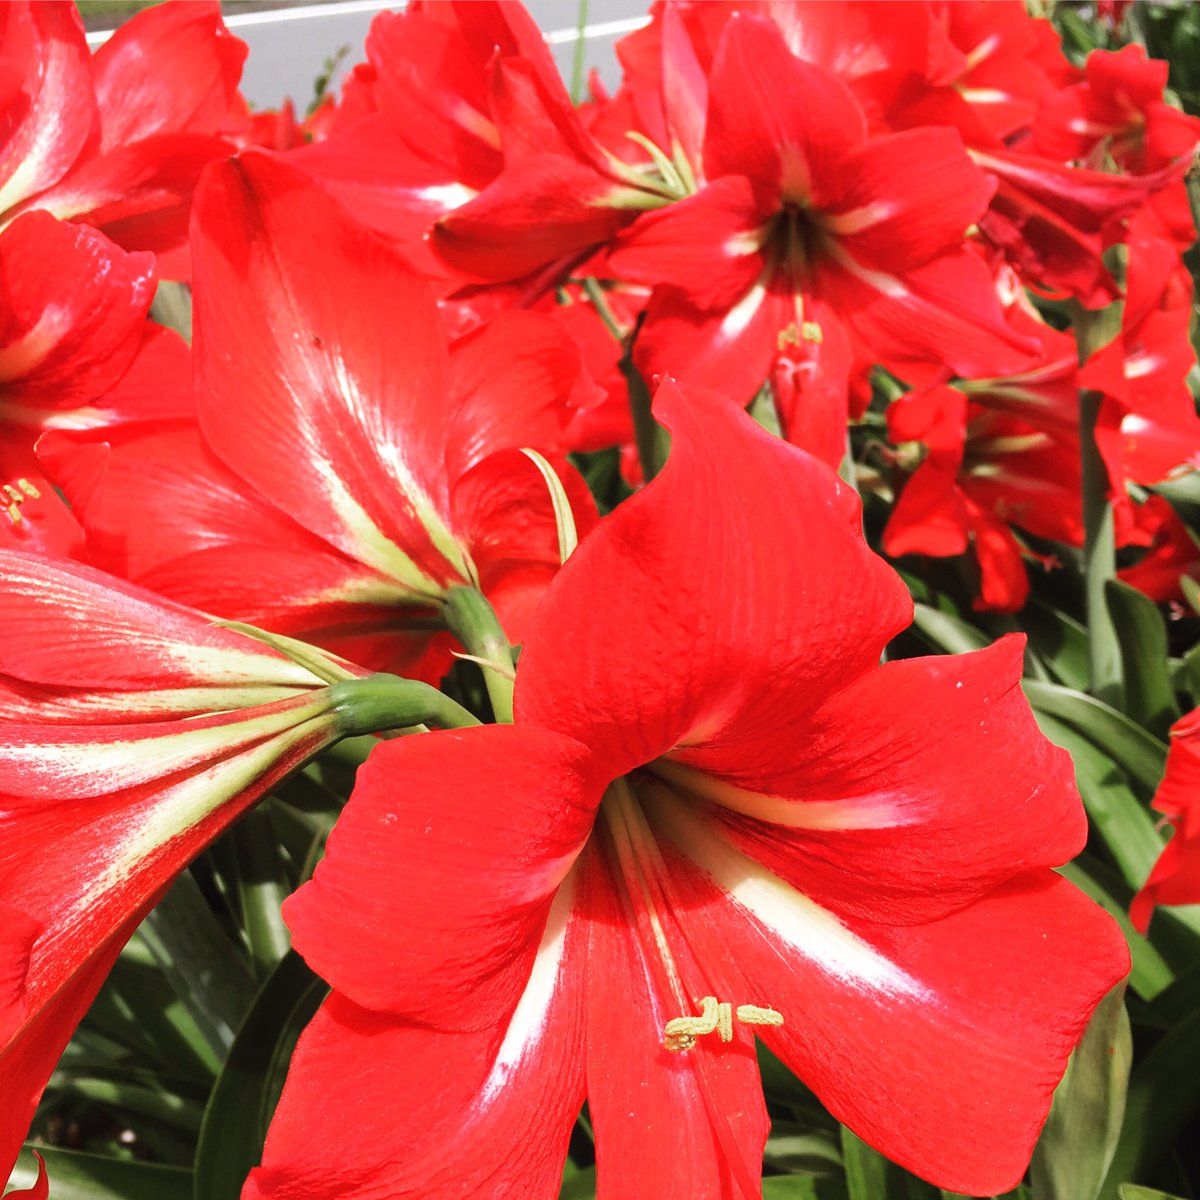 池ポチャ野郎 花が大きく鮮やかな色の花 アマリリス 花 フラワー 赤い花 球根植物 鮮やかな色の花 大輪の花 太い茎 百合に似た花 大きな花 T Co Vzhlntbpco Twitter